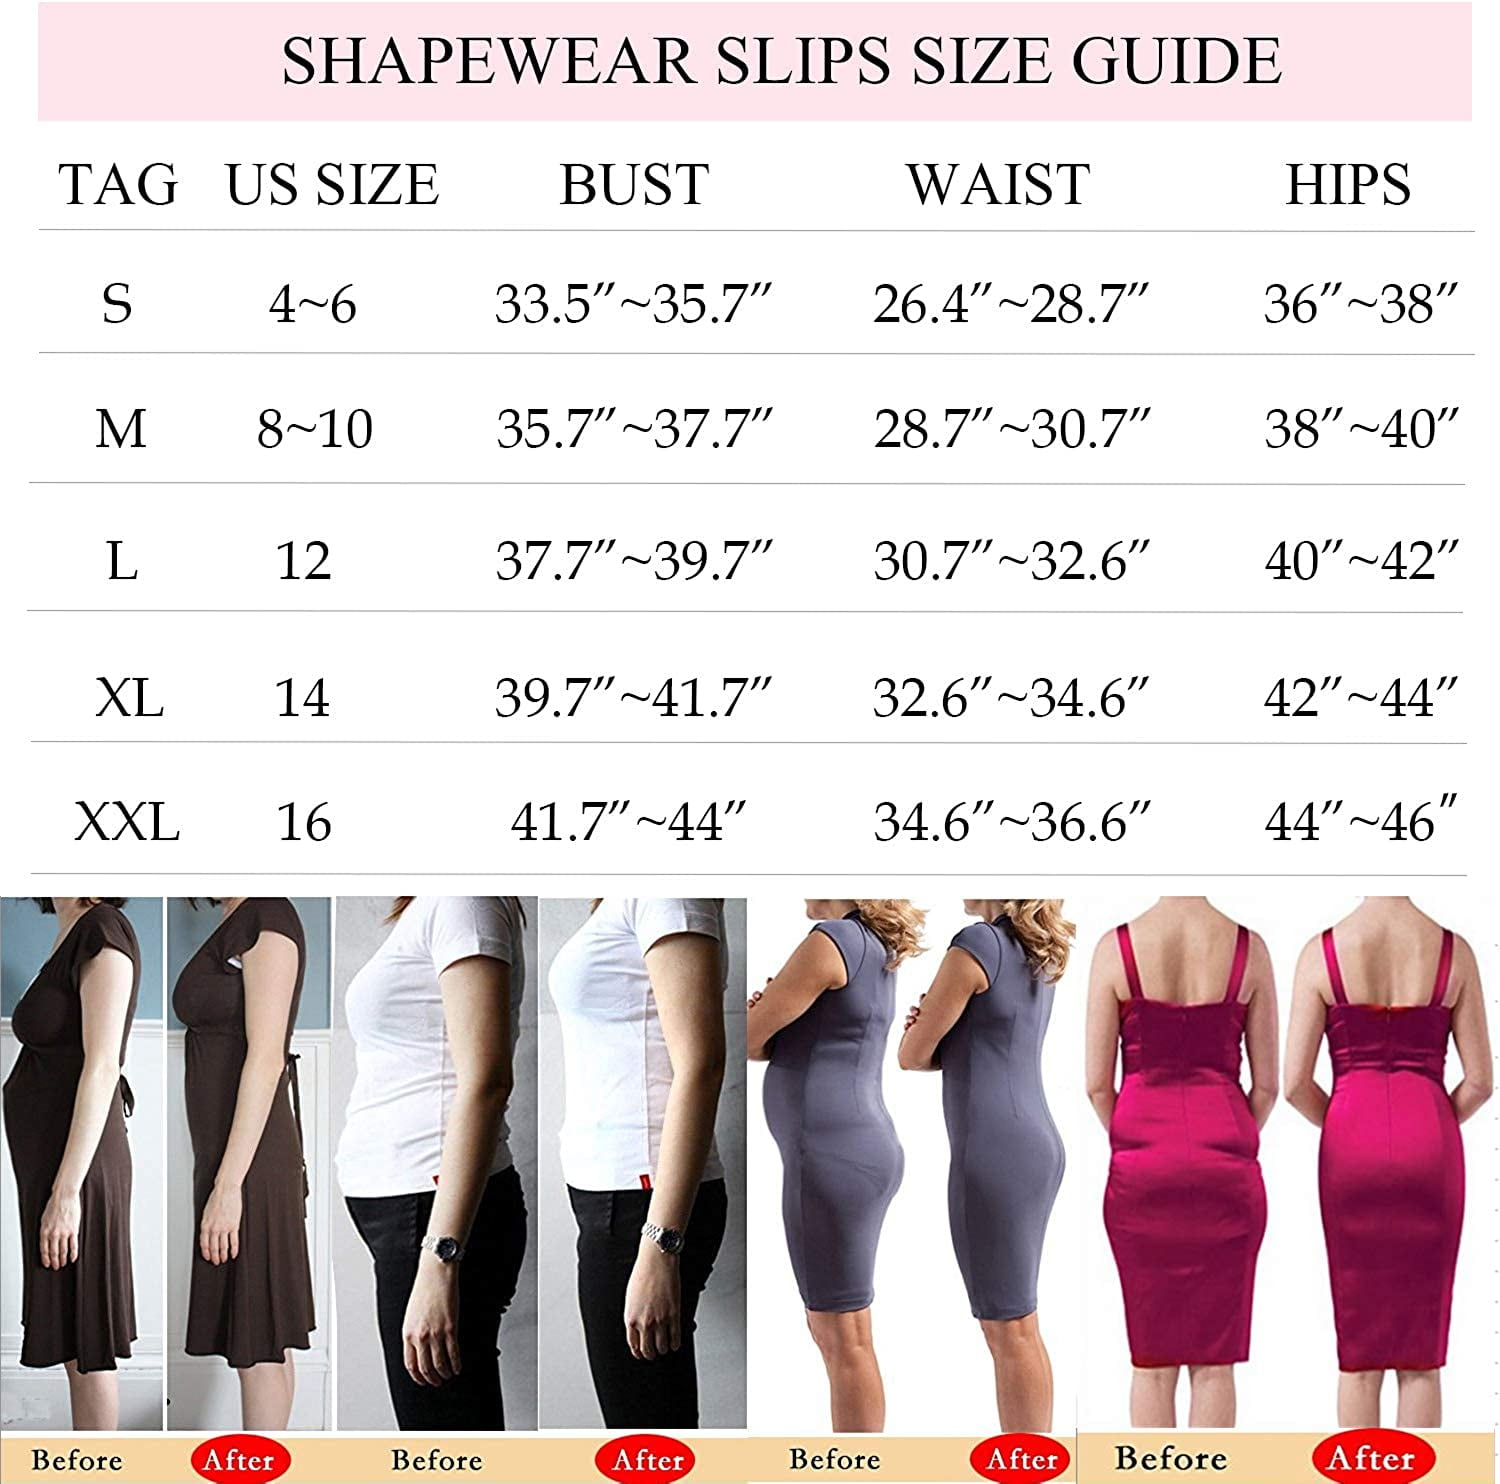 Vaslanda Strapless Shapewear Slip for Women Tummy Control Seamless Full  Body Shaper Under Dress Slip 